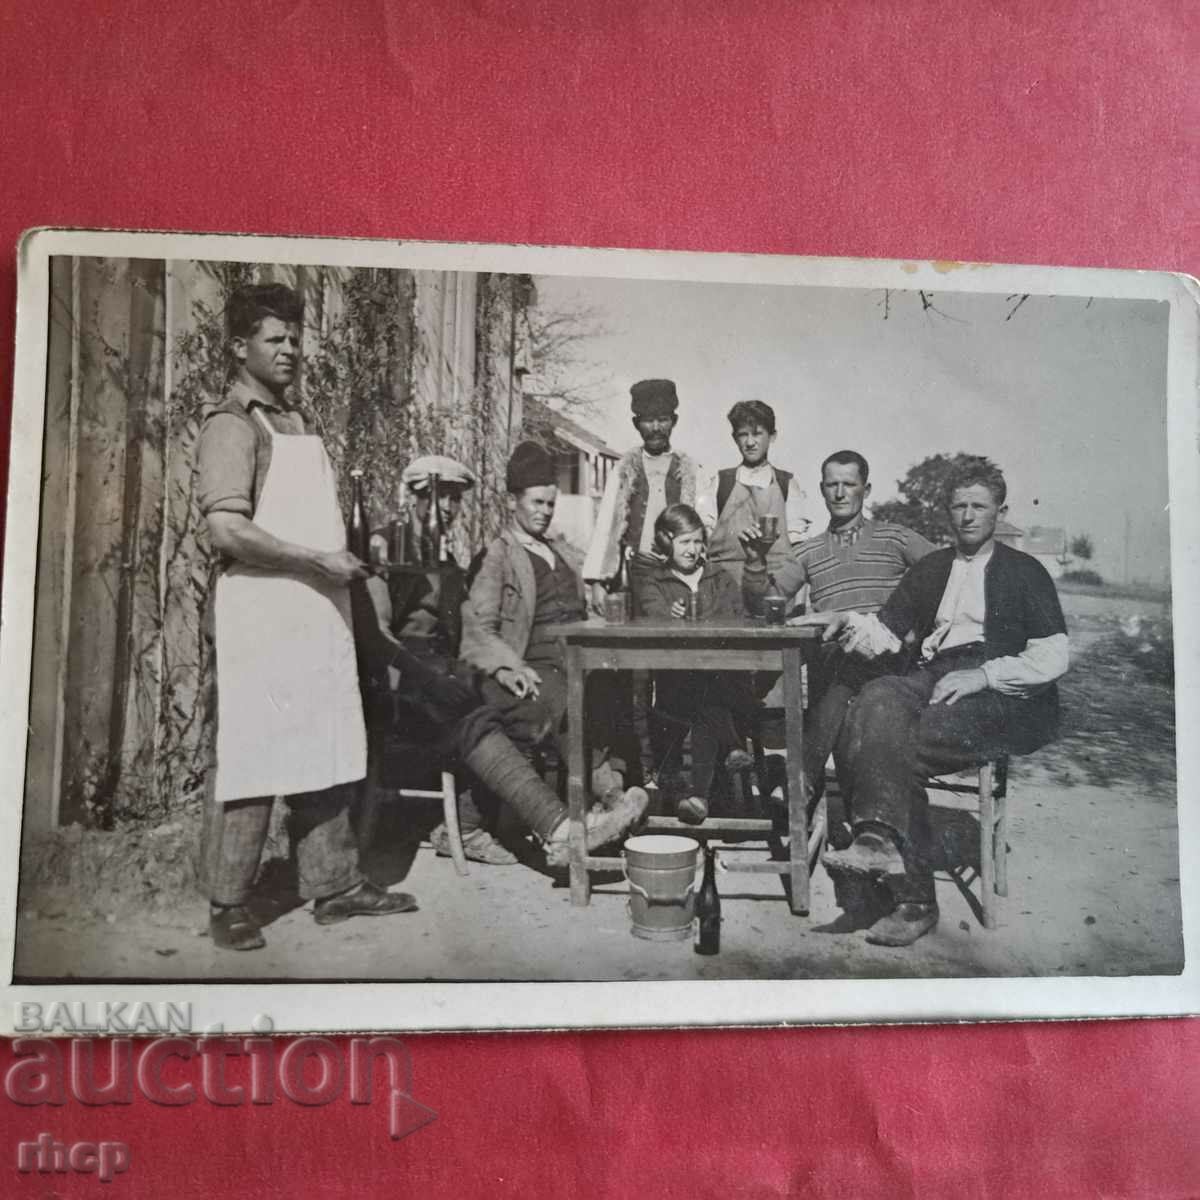 Βασίλειο της Βουλγαρίας - στην παμπ του χωριού, μια παλιά φωτογραφία από τη δεκαετία του 1930